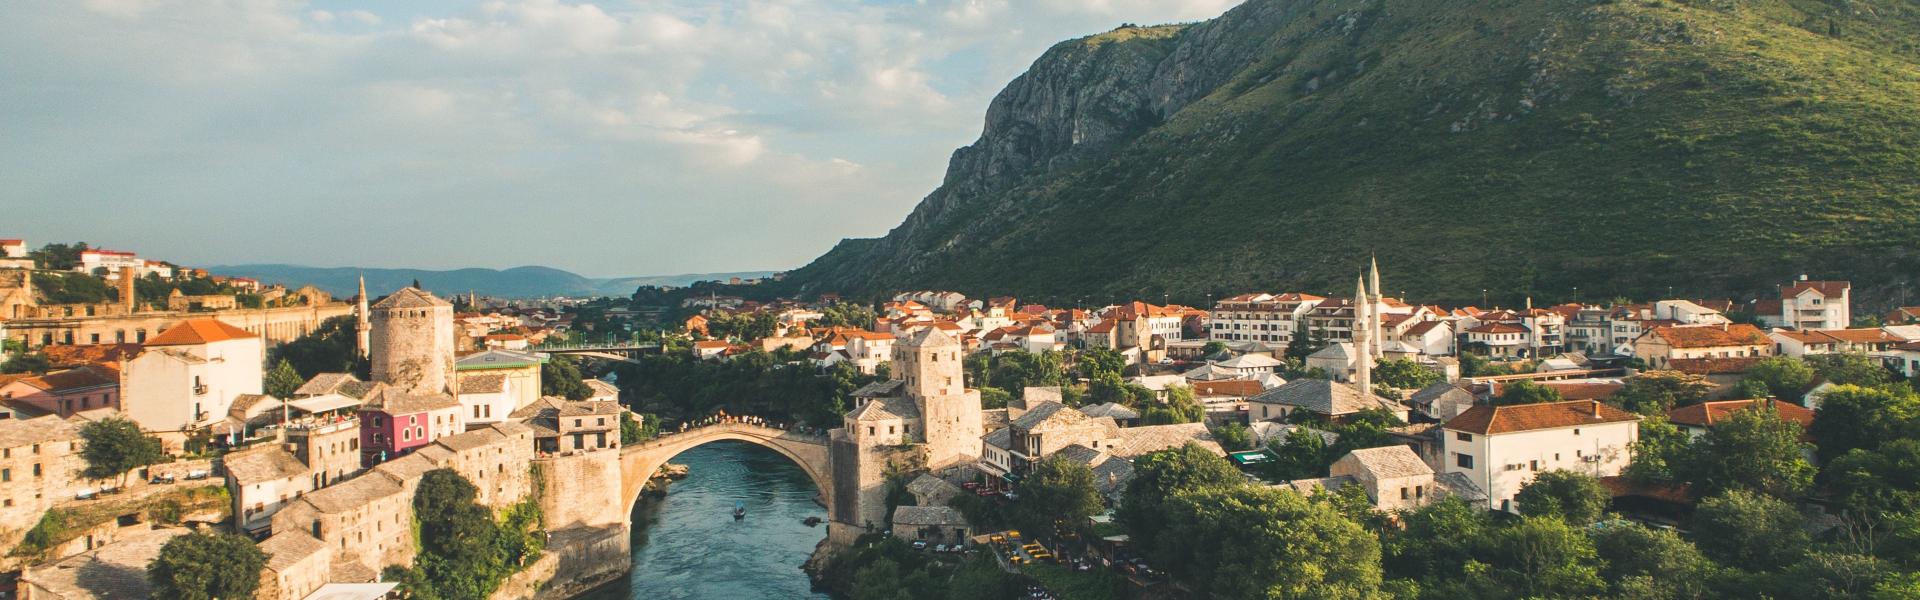 Ferienwohnungen und Ferienhäuser in Bosnien und Herzegowina - e-domizil